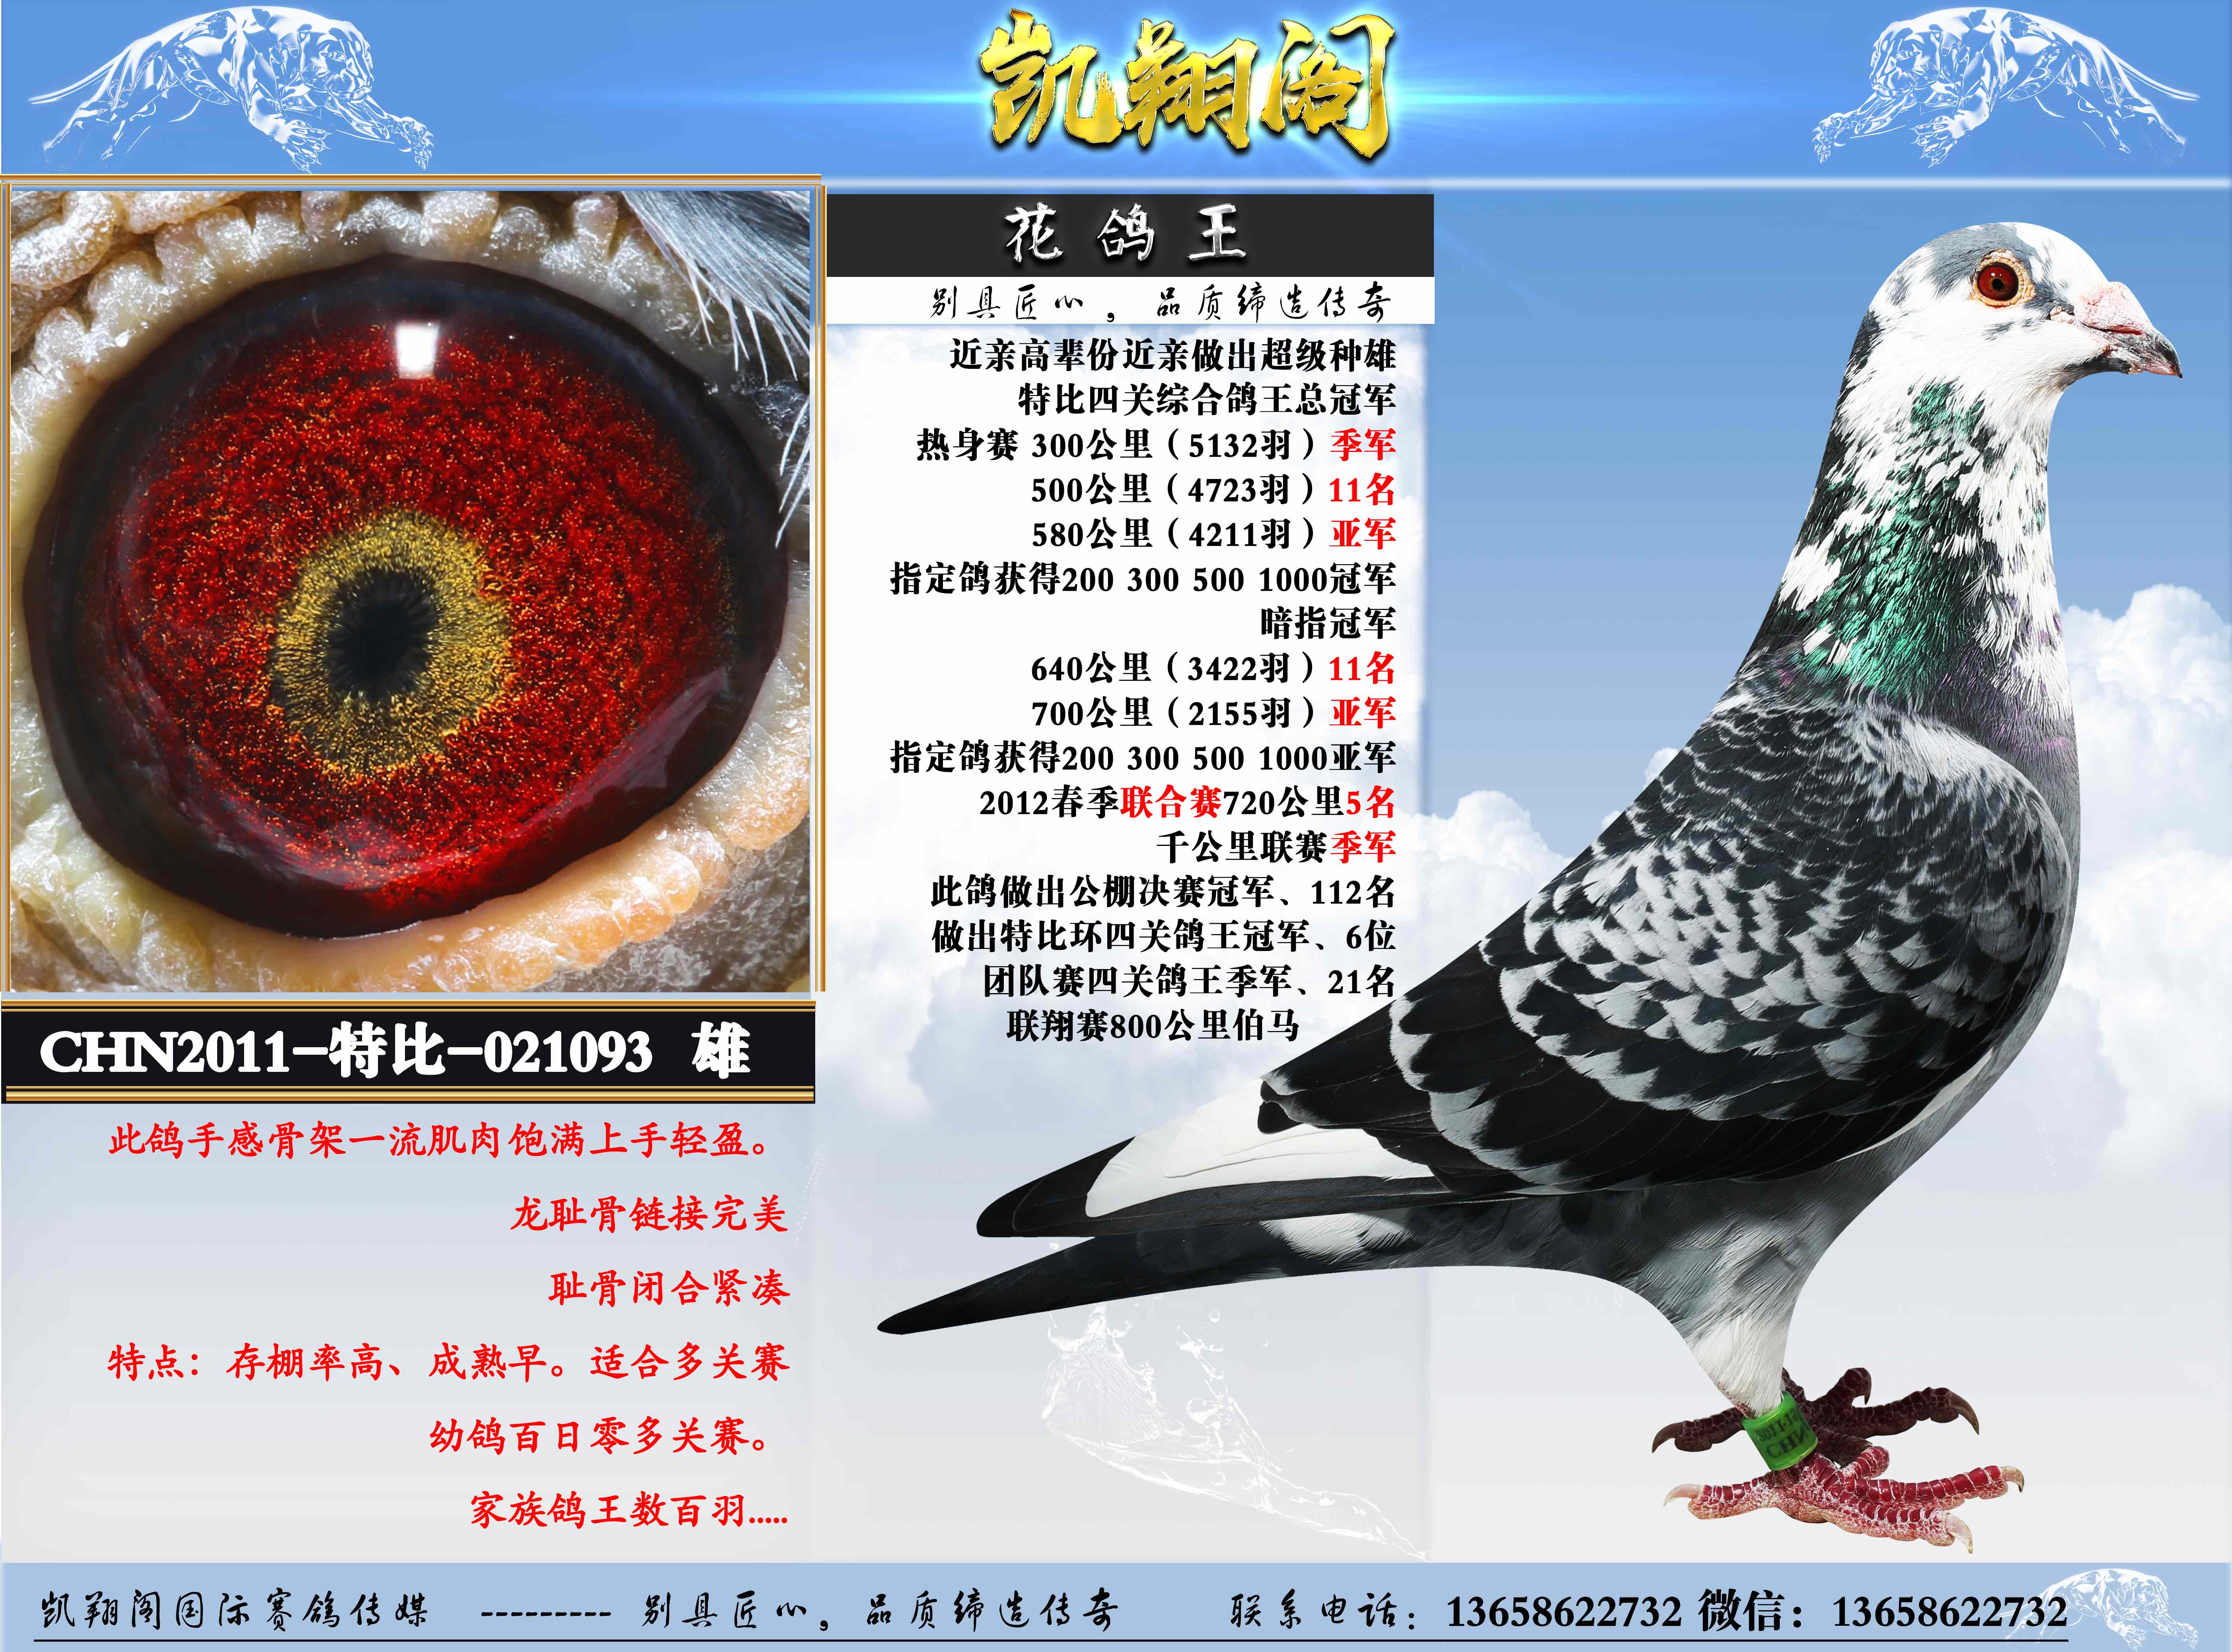 不死必归：上海超远程八月龄幼鸽负伤归巢(图)-中国信鸽信息网